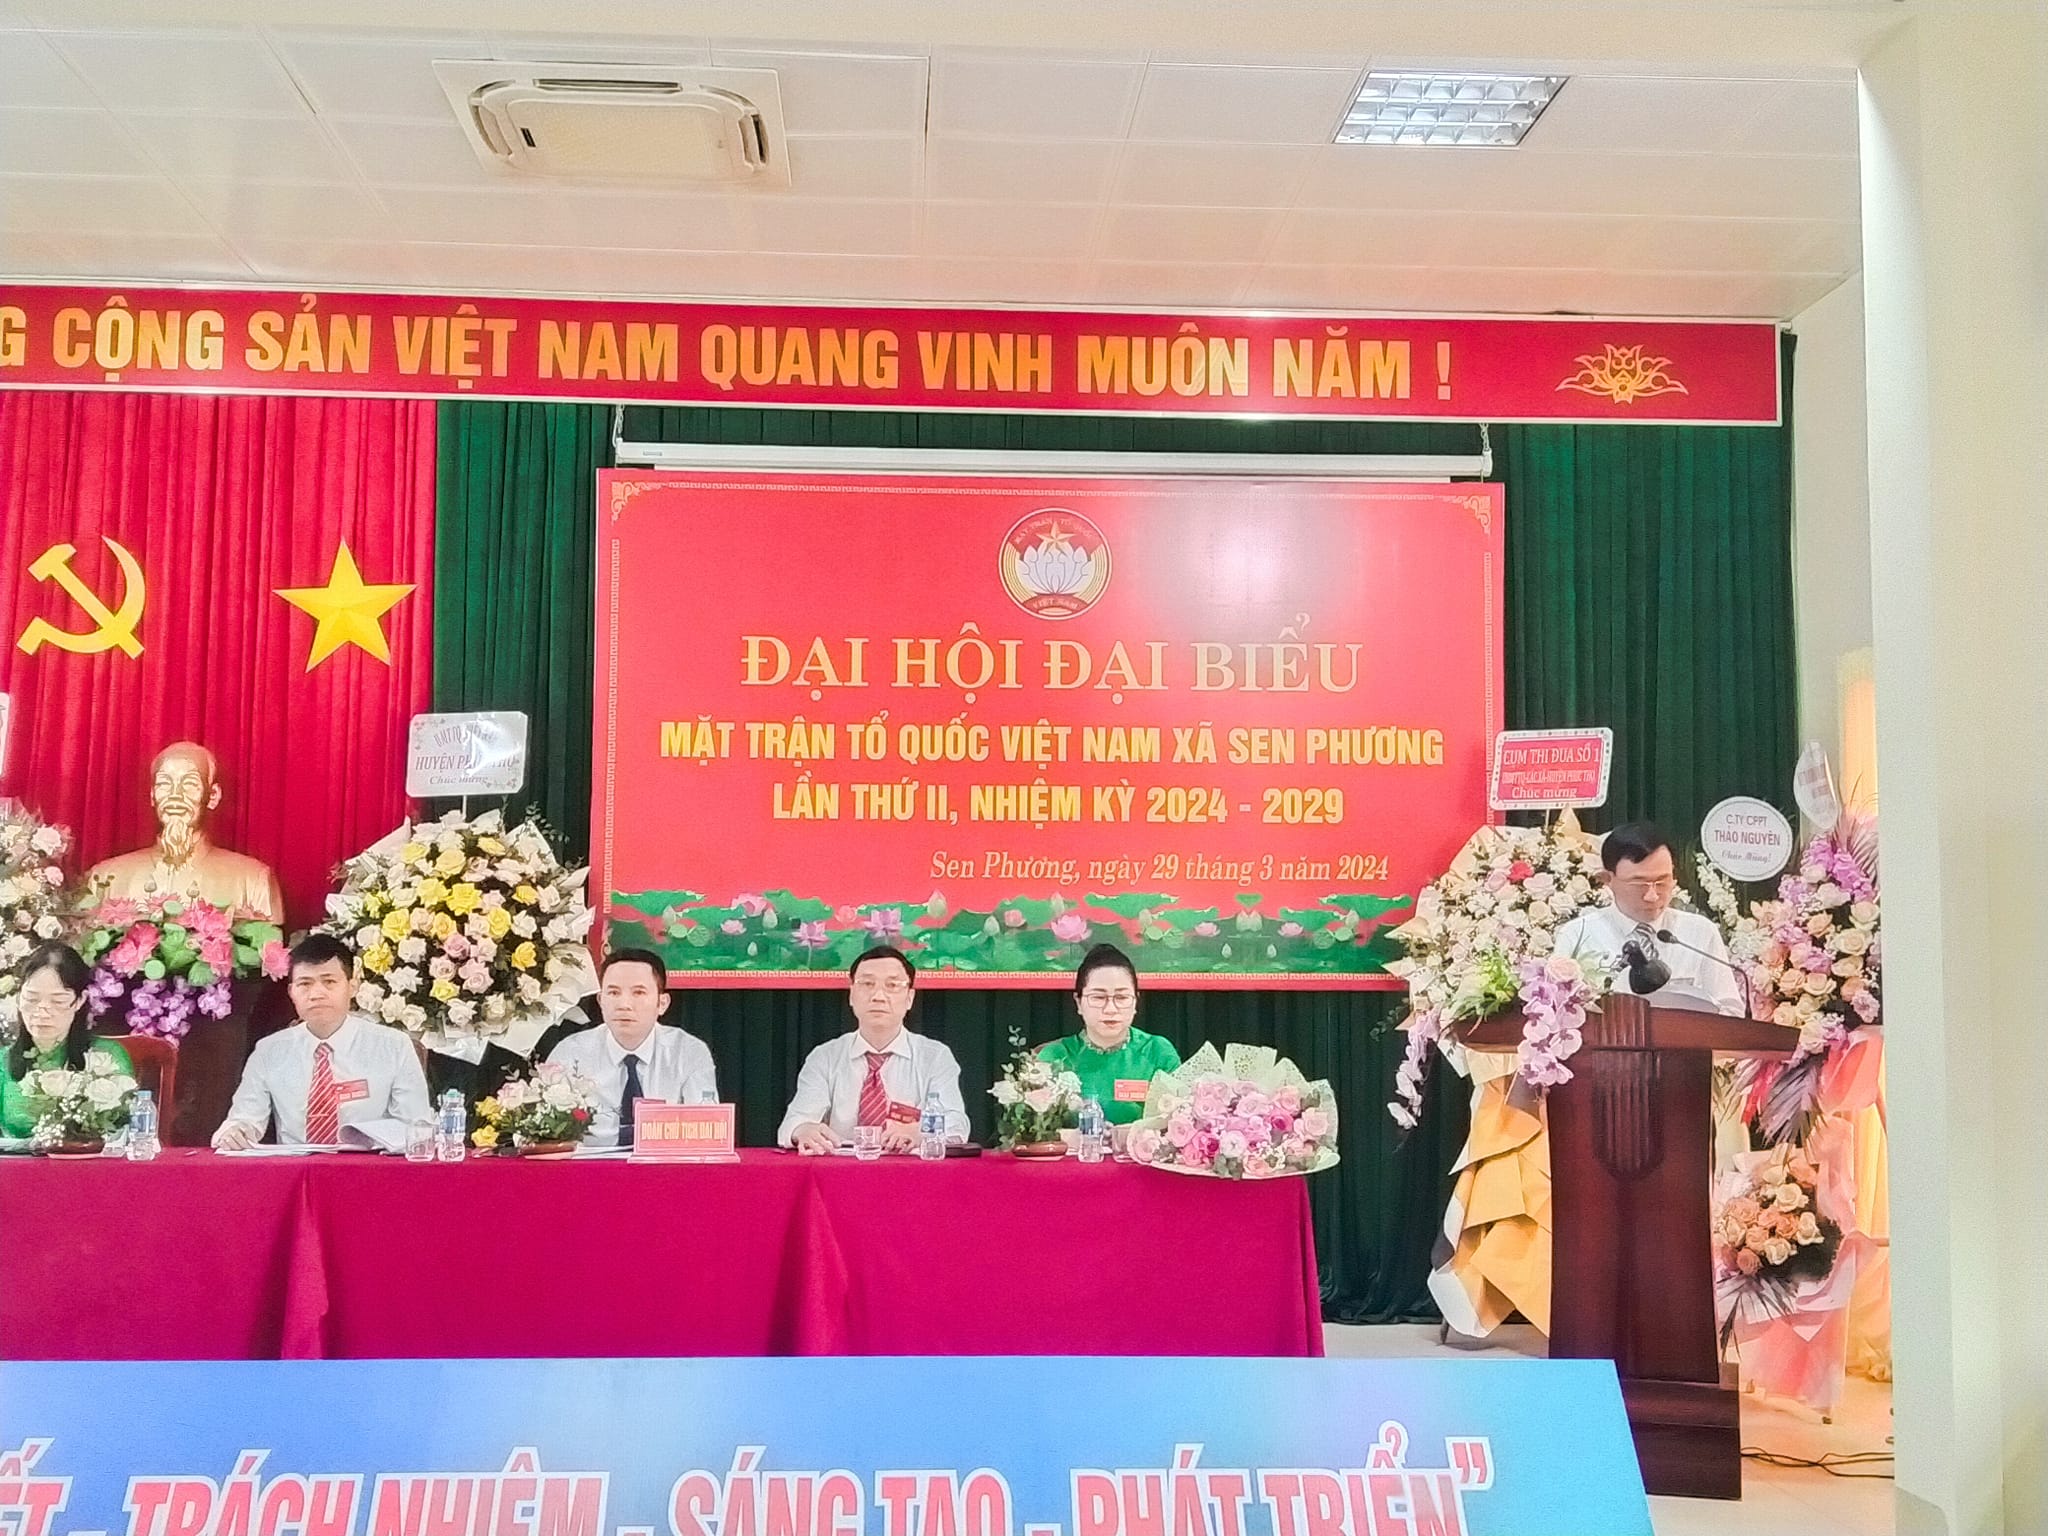 Sáng 29/3/2024 Ủy ban MTTQ Việt Nam xã Sen Phương tổ chức Đại hội đại biểu lần thứ II, nhiệm kỳ 2024 - 2029.